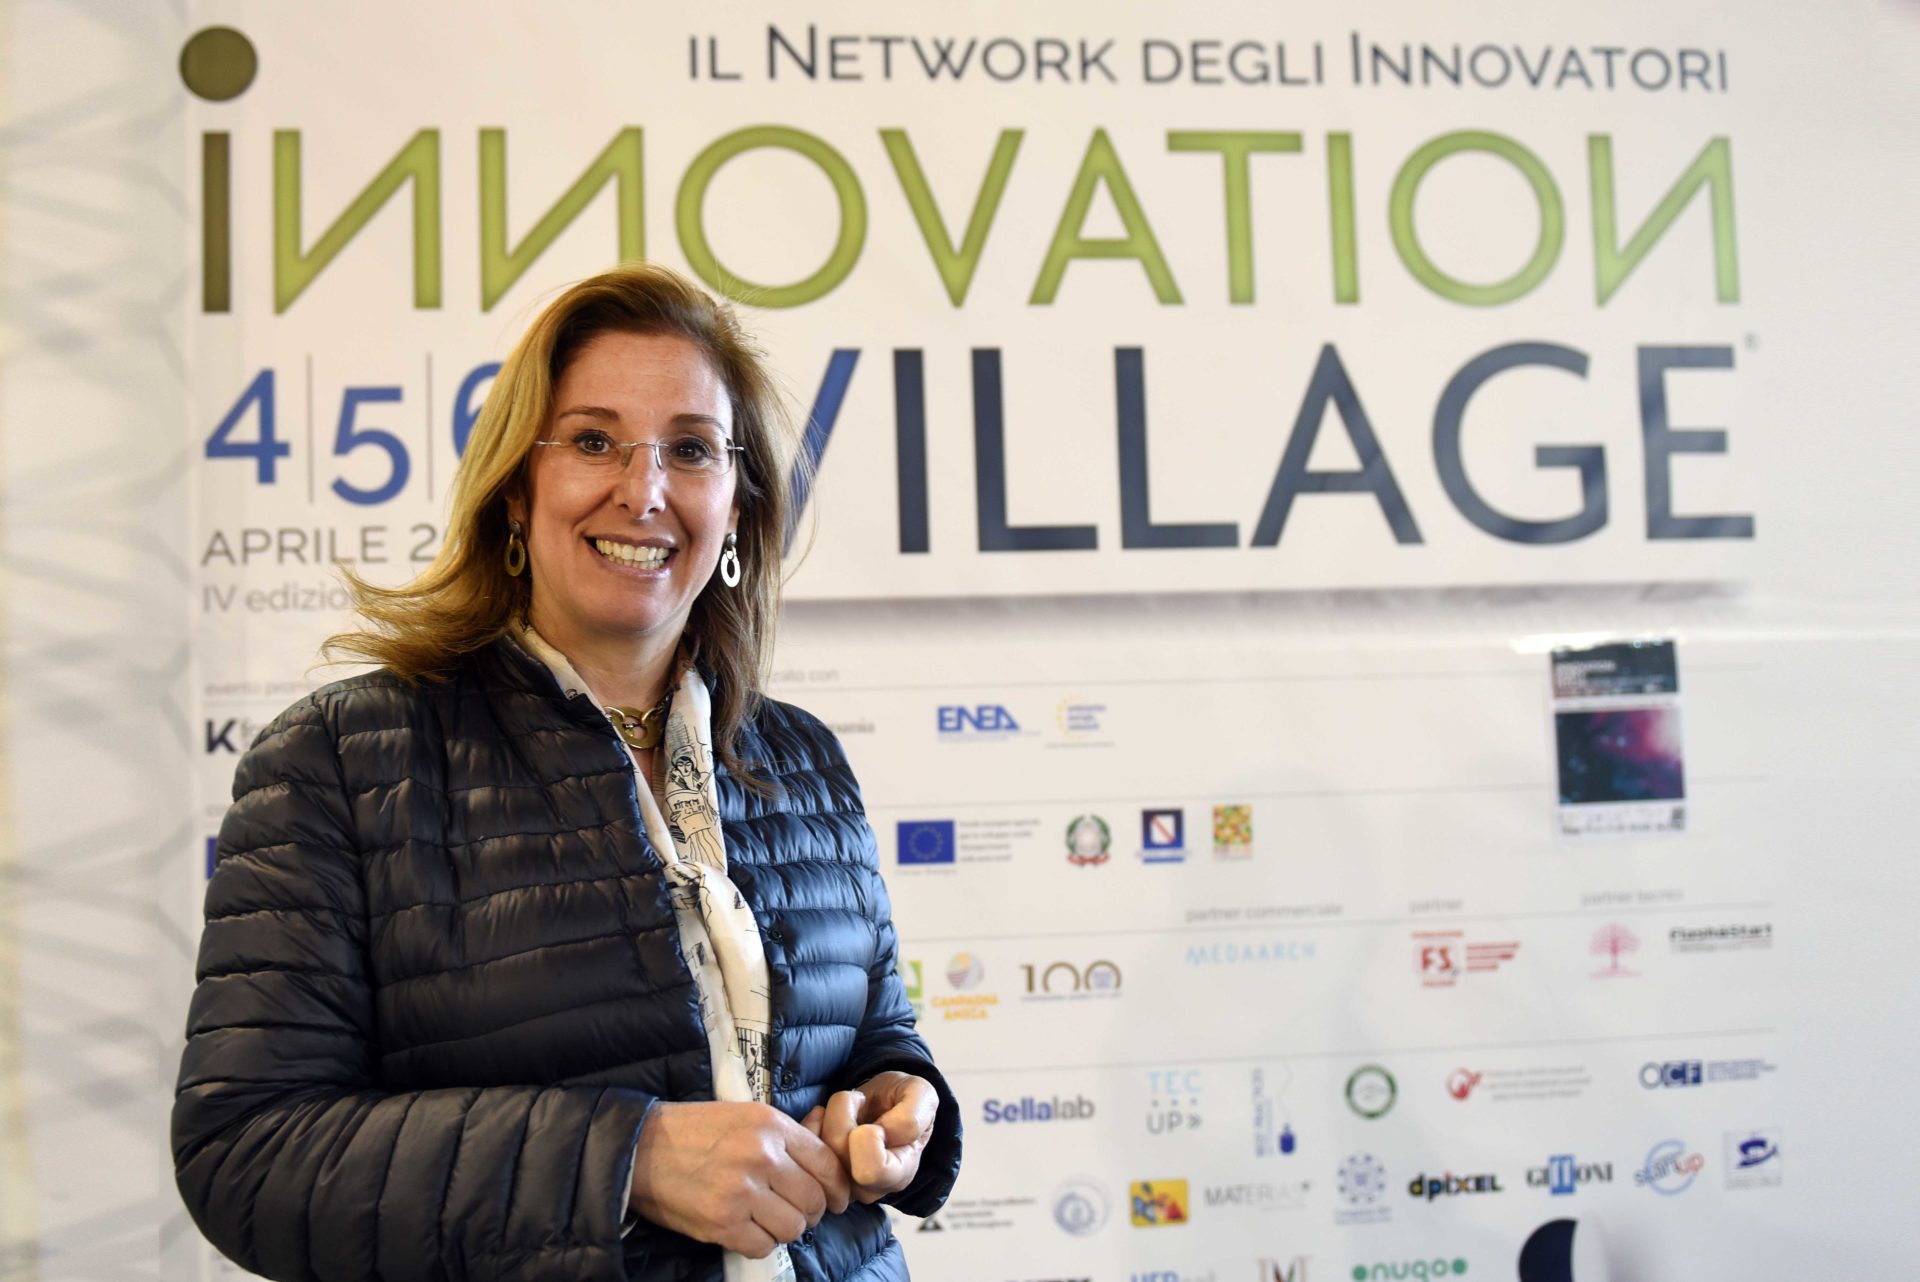 L’innovazione non si ferma, al via i webinar di Innovation Village